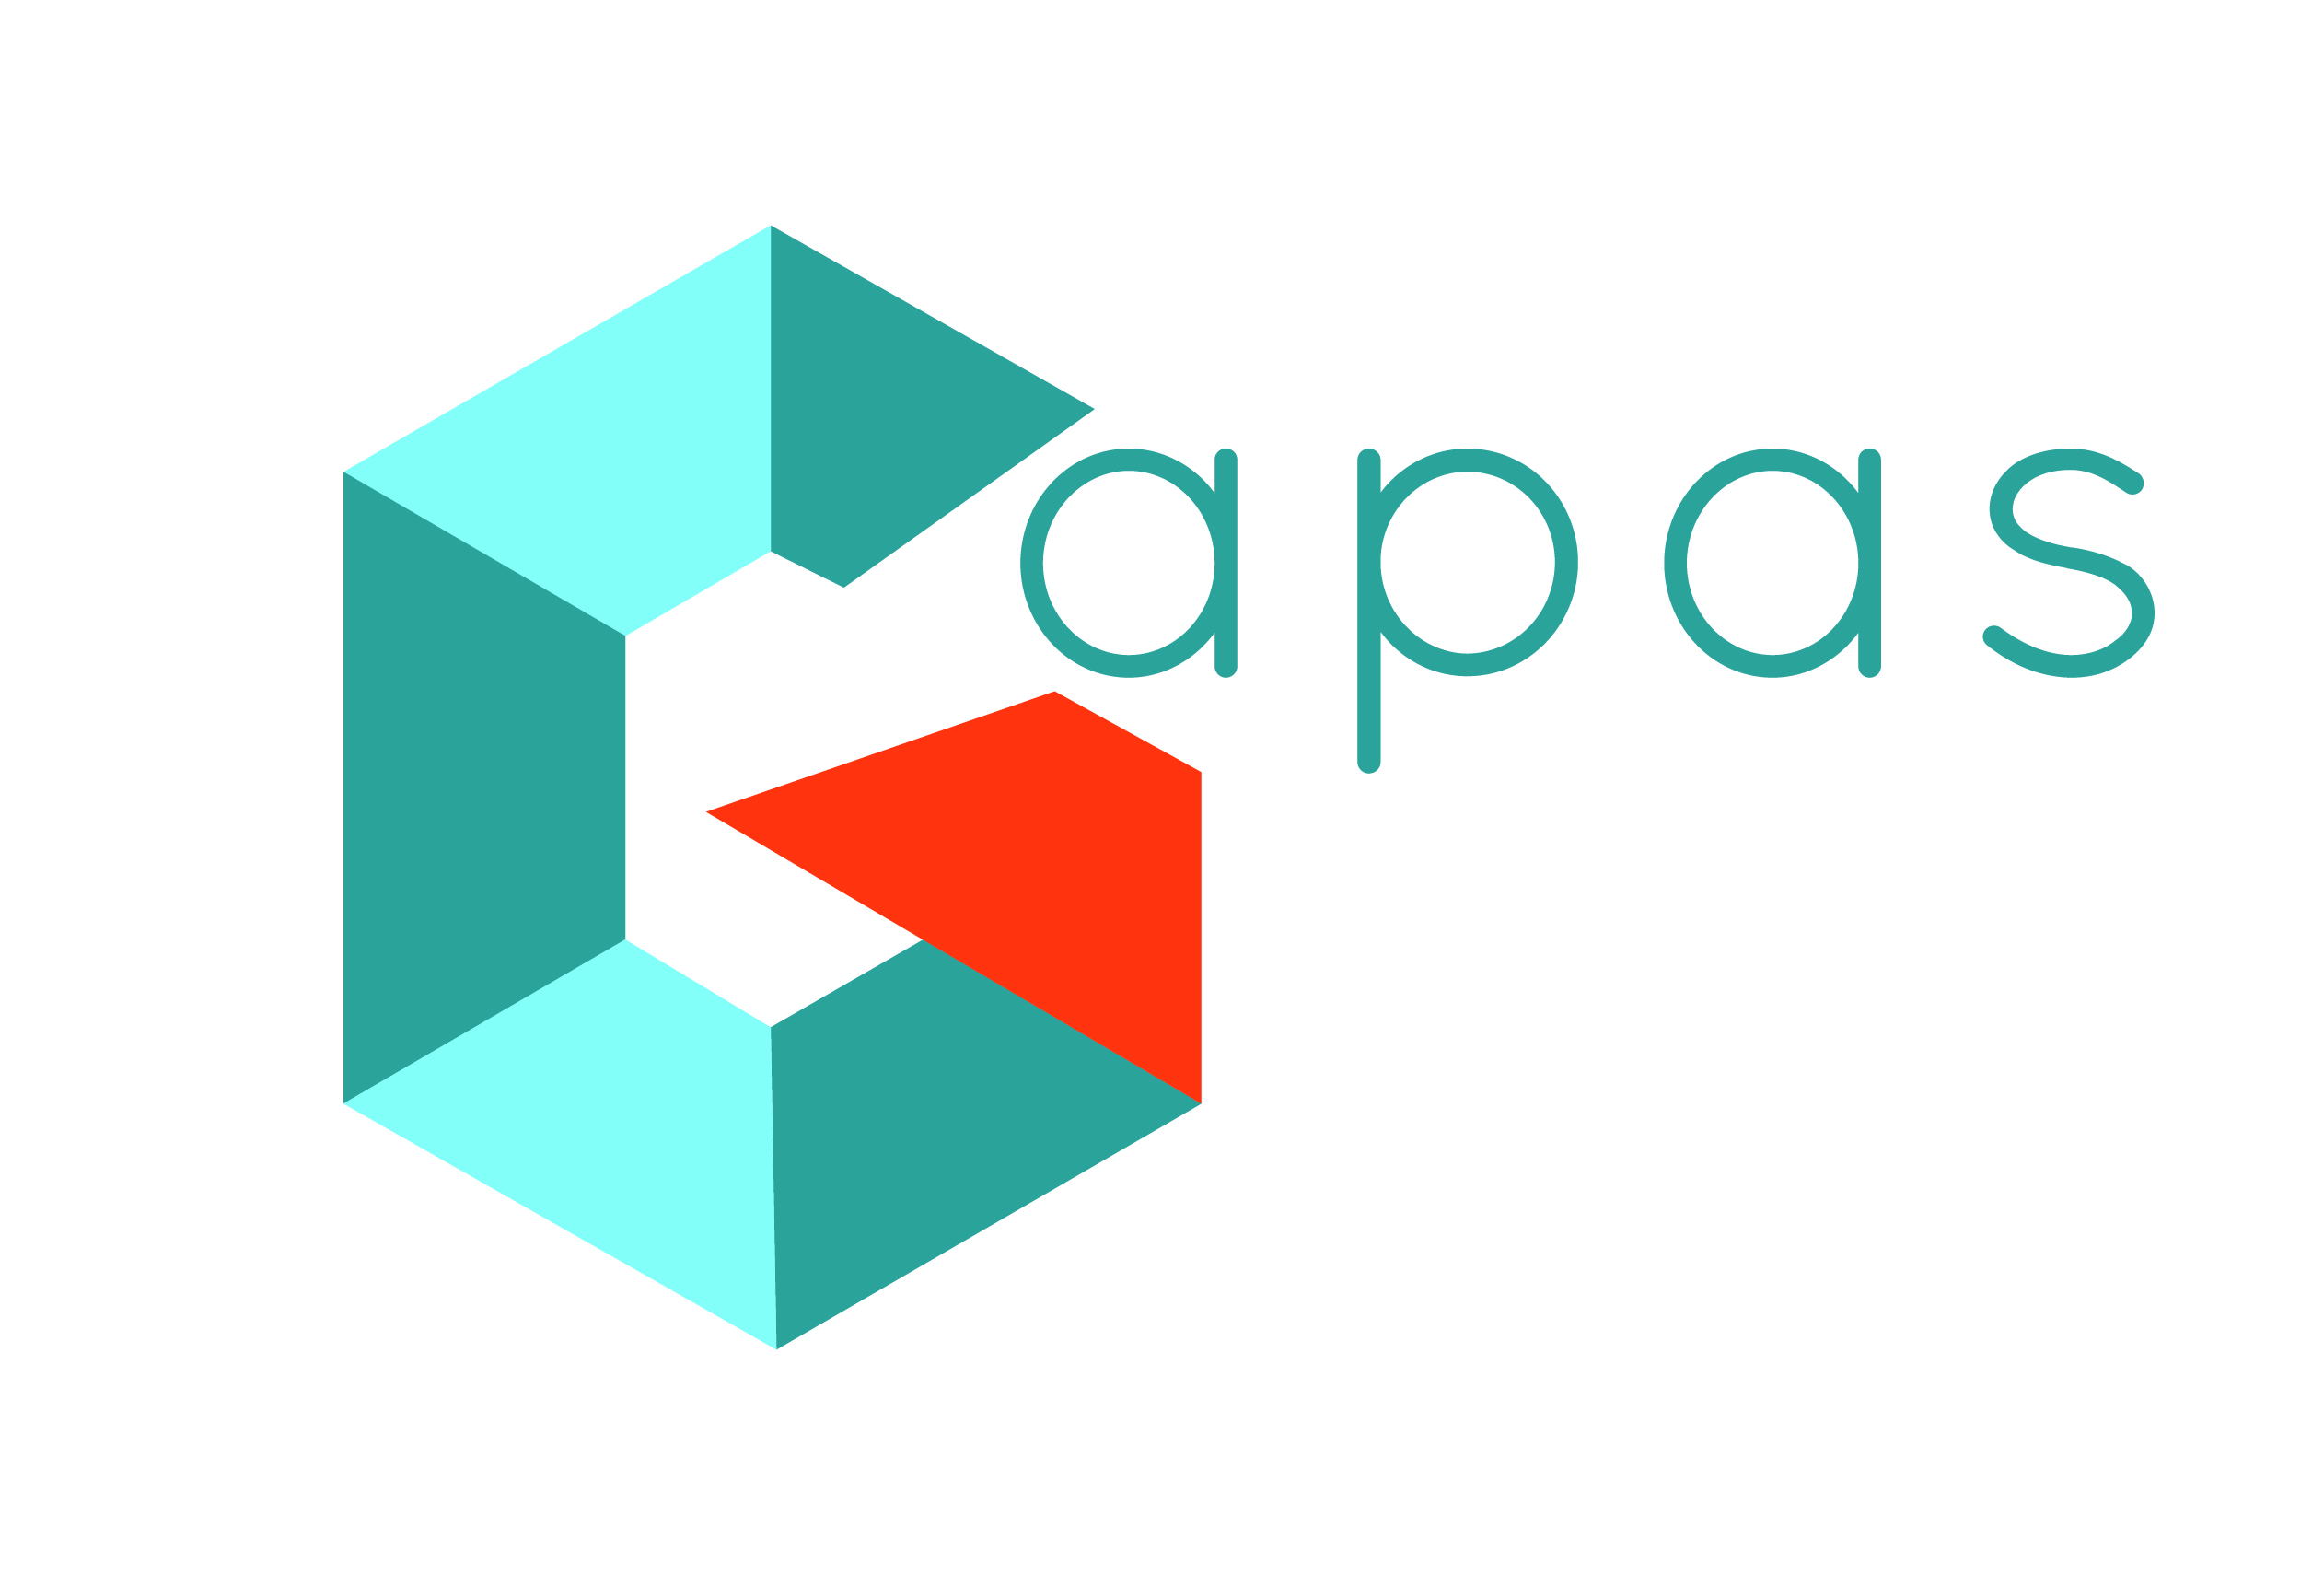 Logo dans les tons de turquoise et orange vif, illustrant le G du Gapas sous une forme évoquant un tangram, un assemblement de pièces formant un tout significatif. La police des lettres "apas" est ronde et douce.